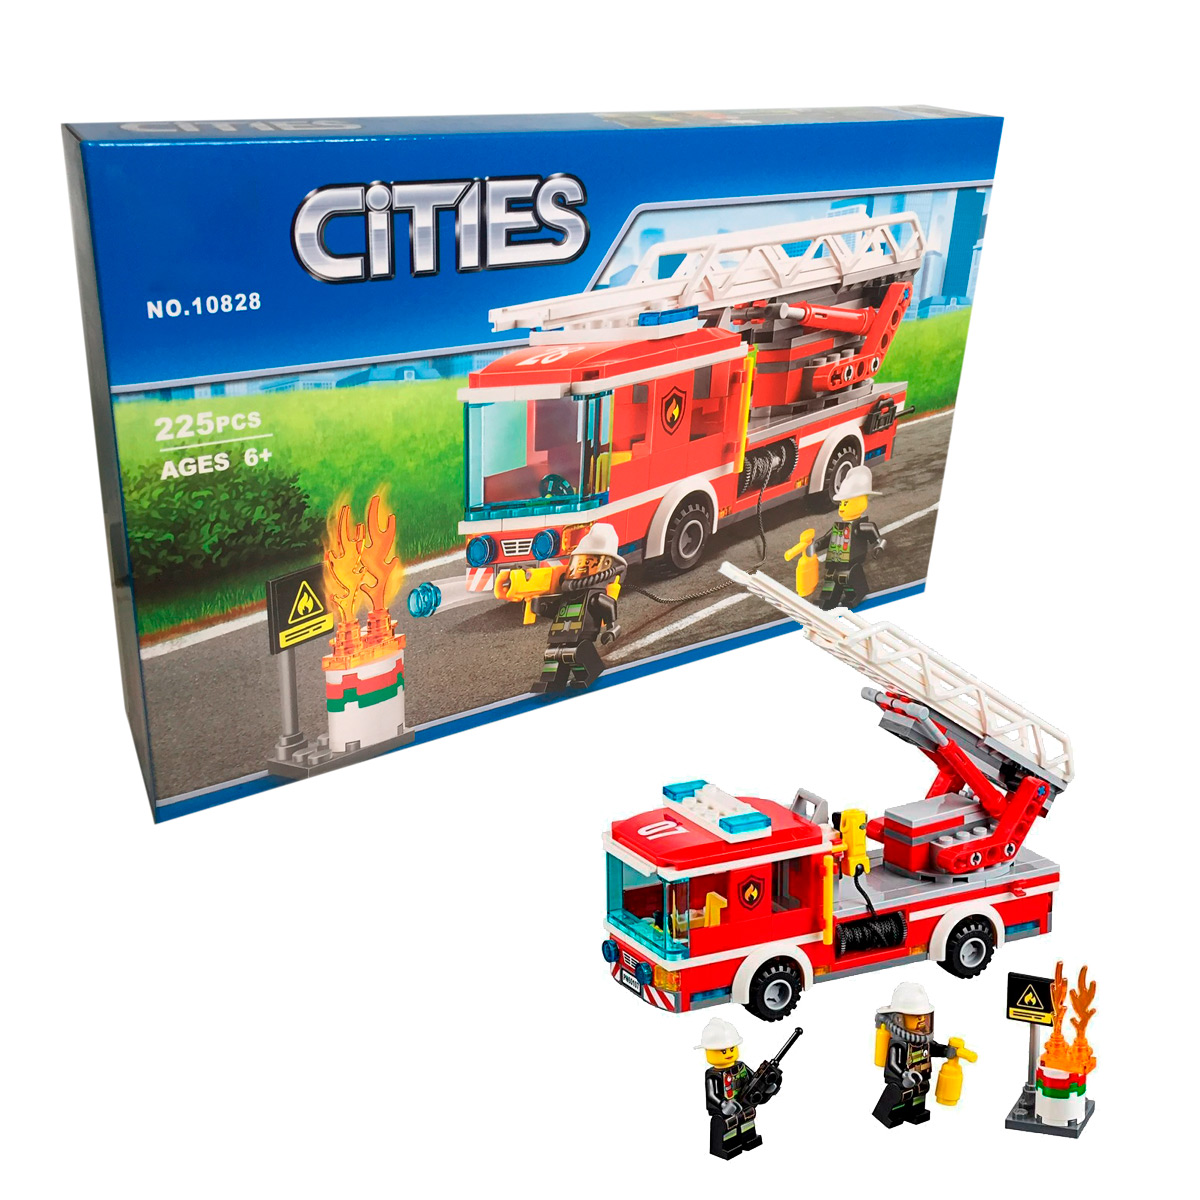 Конструктор Cities 10828 "Пожарная бригада", 225 деталей